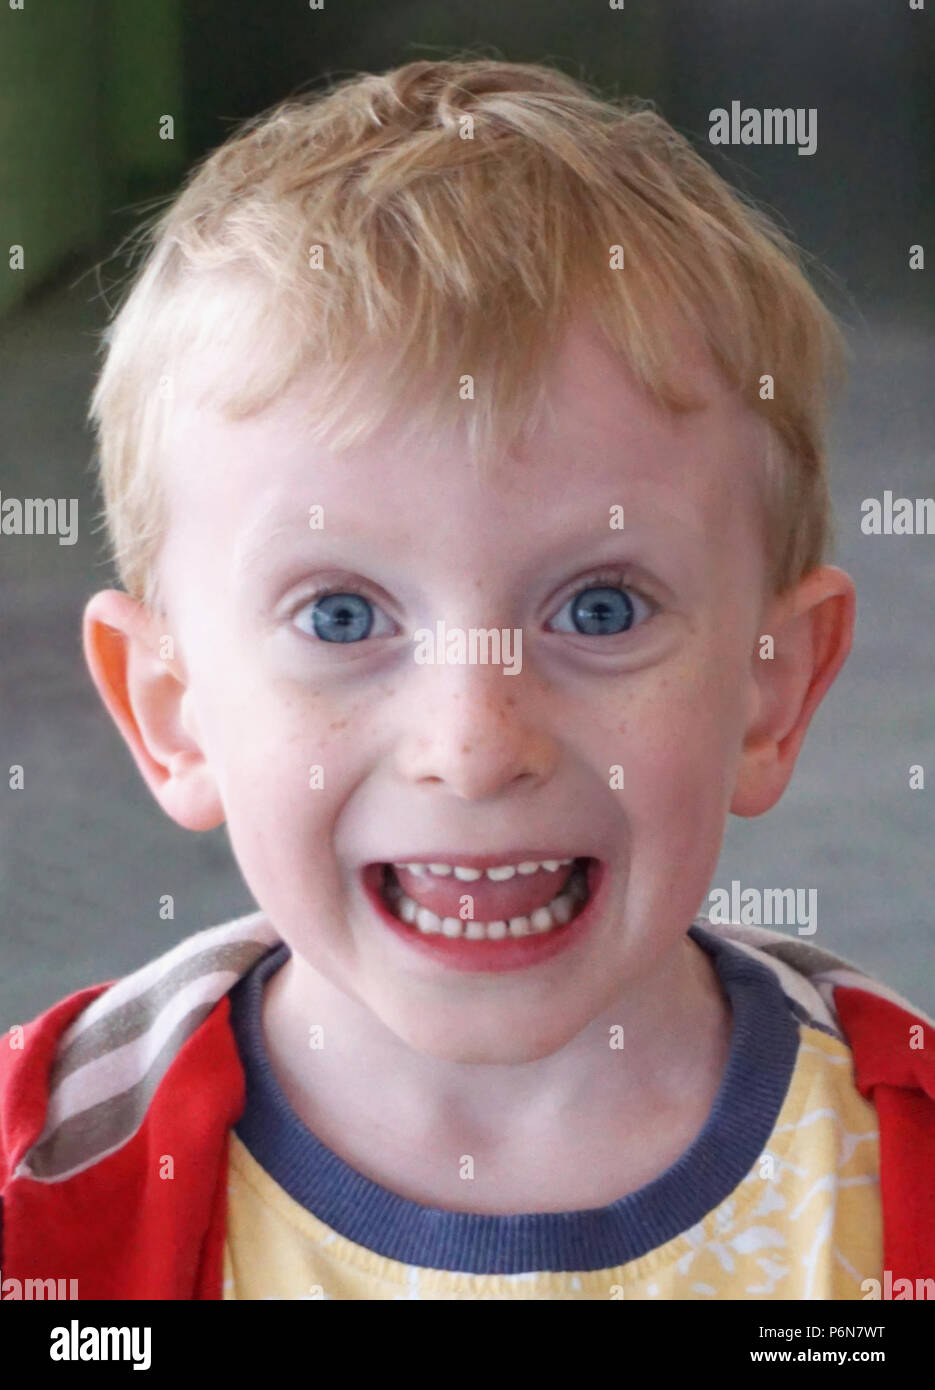 Beau petit garçon aux yeux bleus de 4 ans d'essayer de faire une Drôle de tronche d'expression. Divertissant et amusant les enfants concept portrait Banque D'Images